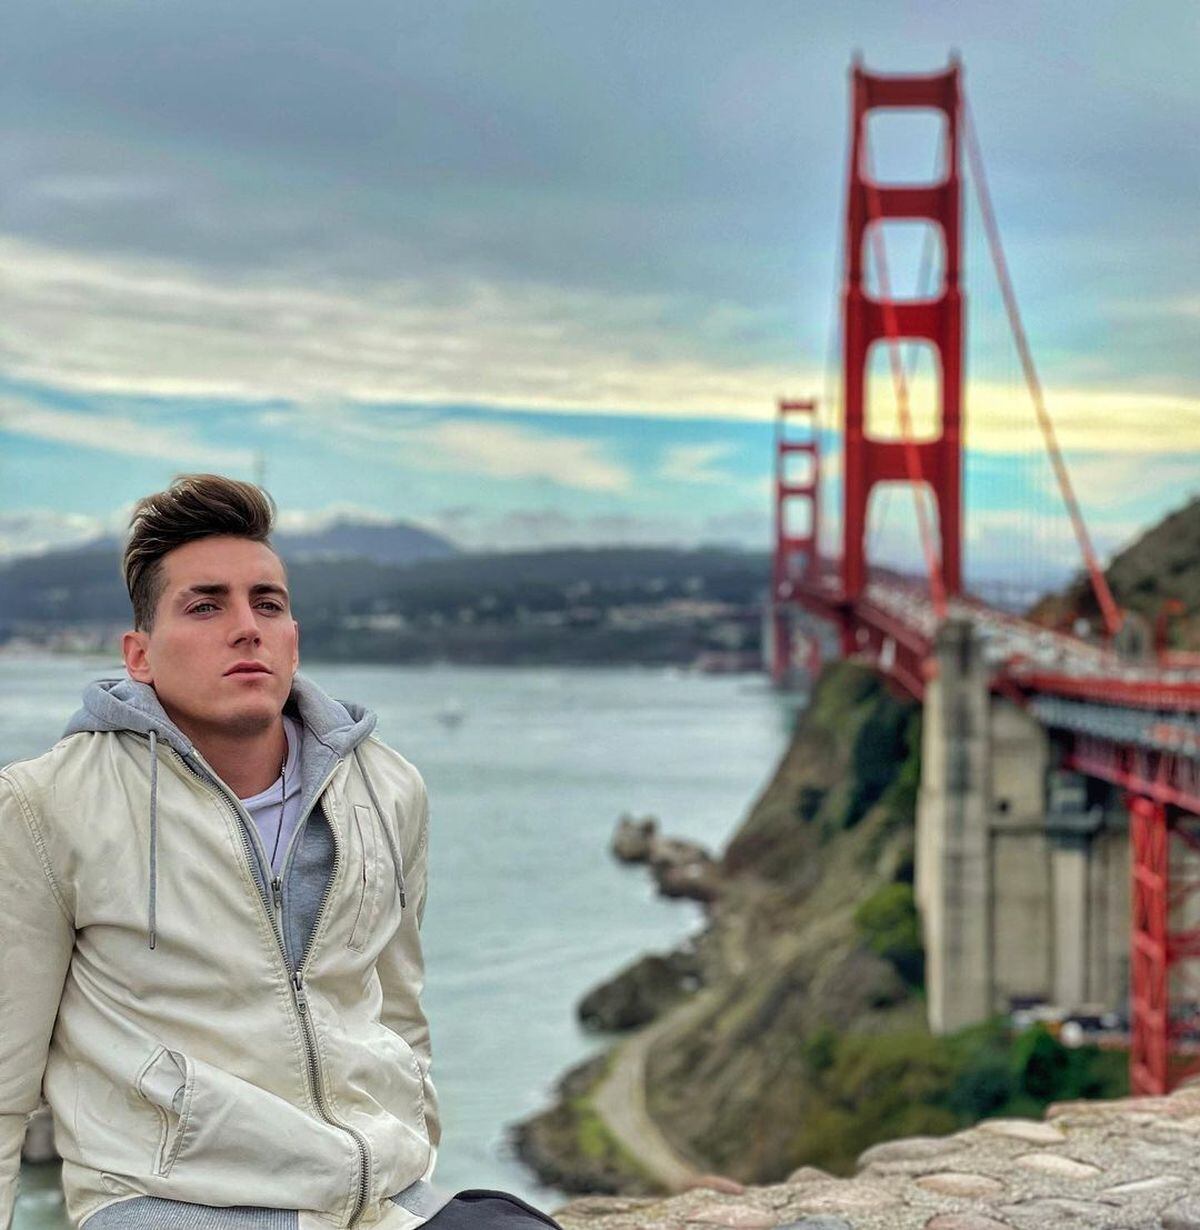 "Empezamos la travesía en San Francisco, puente Golden Gate, no sé si se acuerdan de la película de Spiderman!", escribió en noviembre de 2021 (Foto: Agustín Fernández / Instagram)